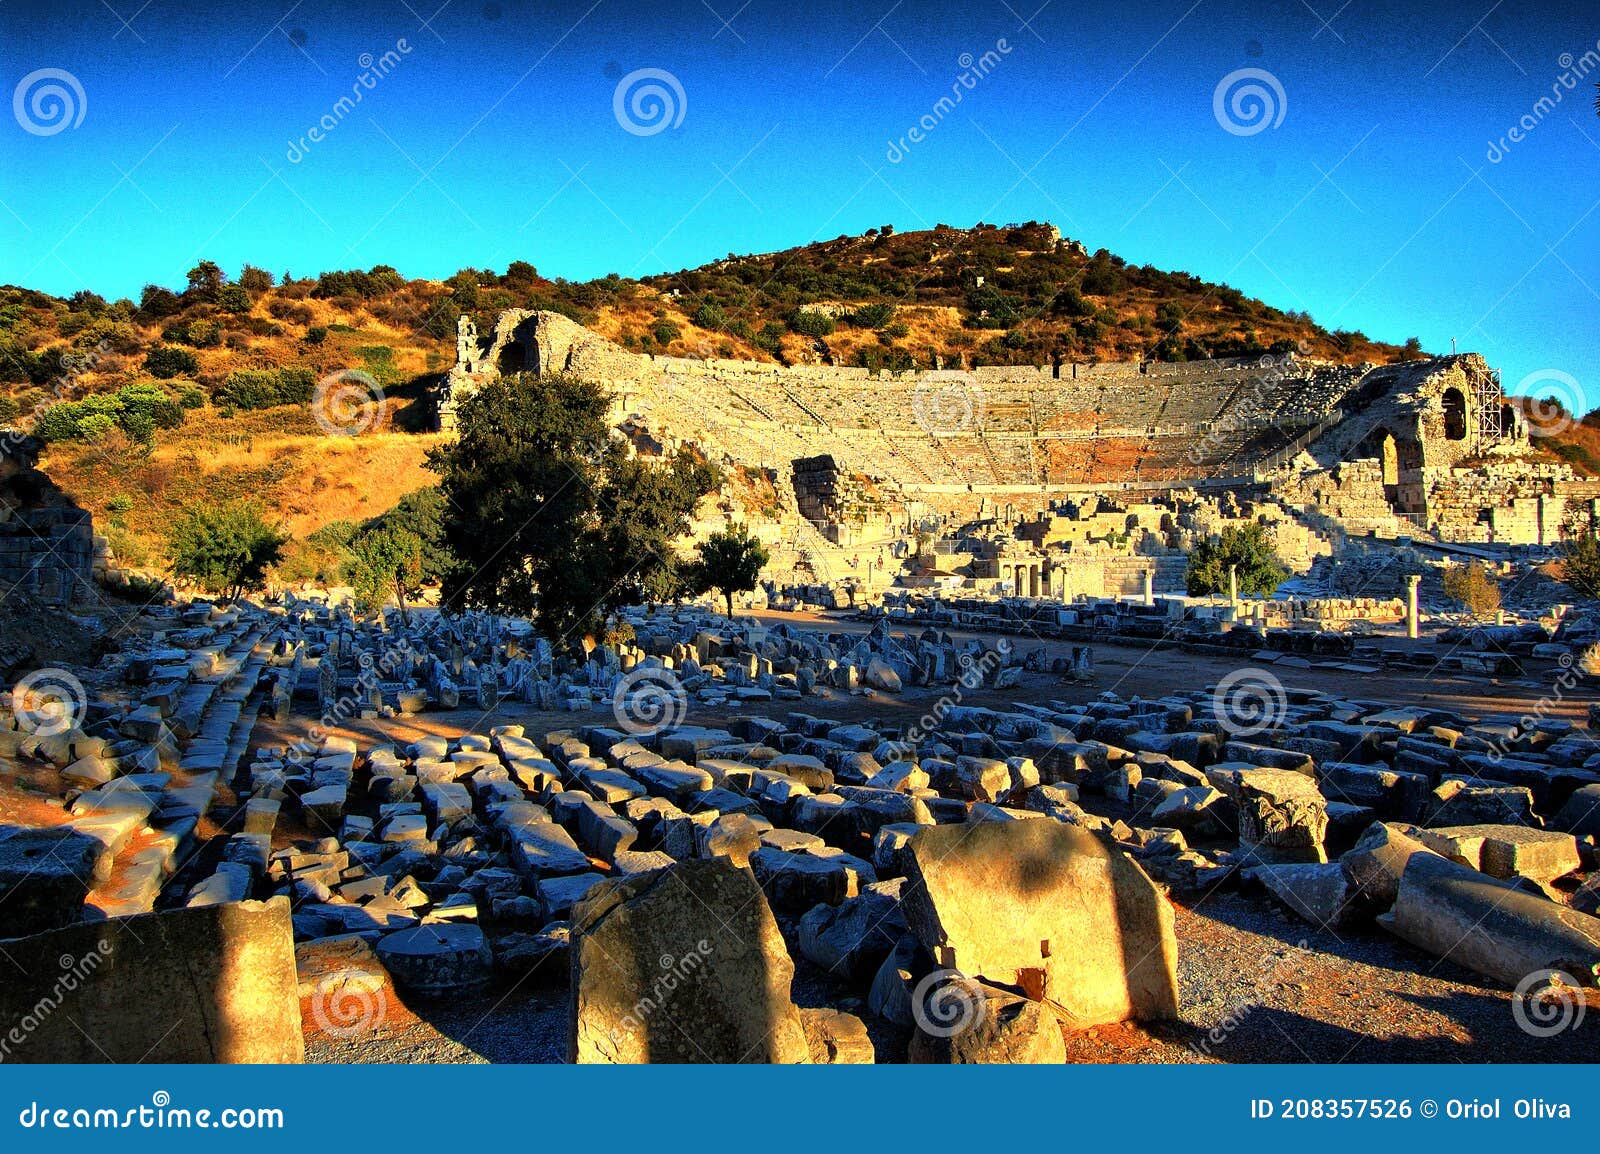 roman ruins of ephesus. theater. (turkey).